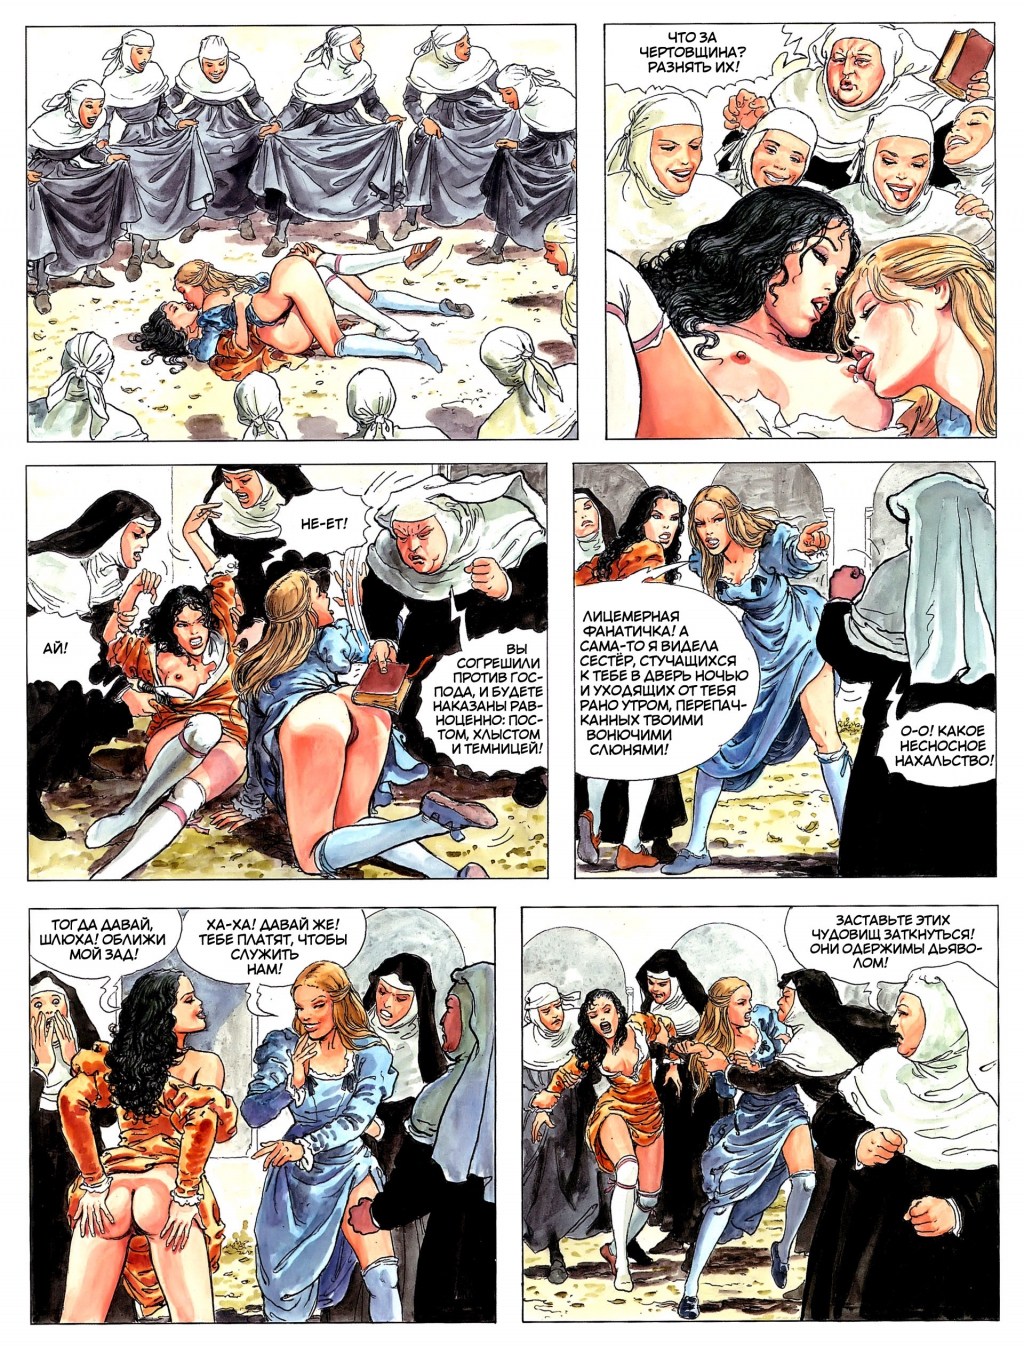 комиксы итальянской эротики фото 8